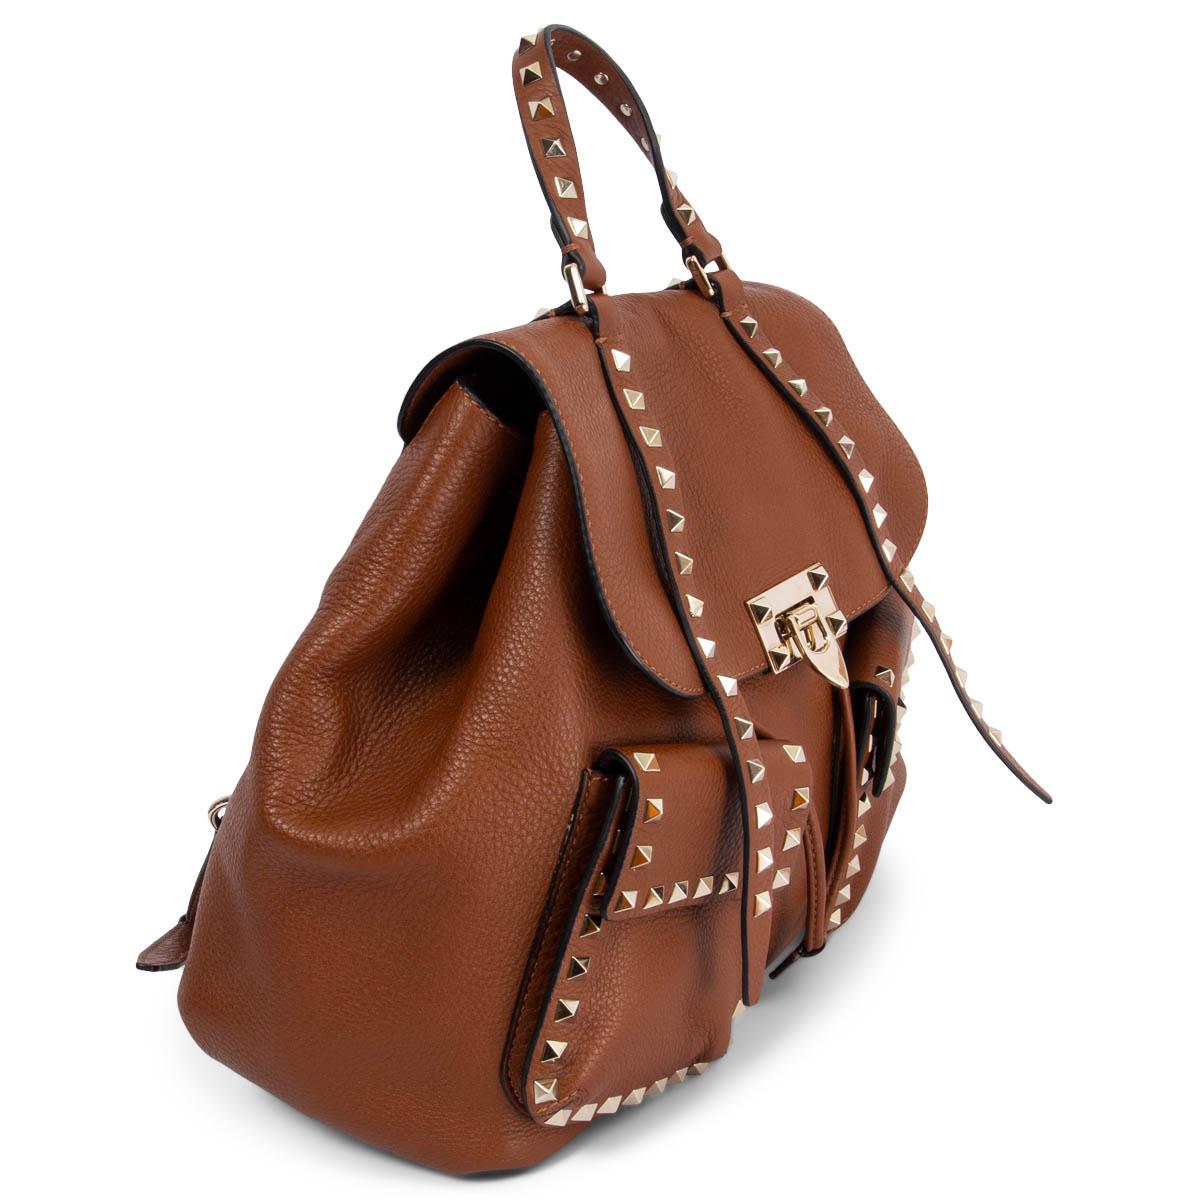 100% authentique Valentino Rockstud Double Pocket Backpack sac à dos en cuir de veau velouté cognac avec clous pyramidaux de couleur or clair qui bordent le sac. Il comporte deux poches frontales à fermeture éclair, des bretelles réglables et un